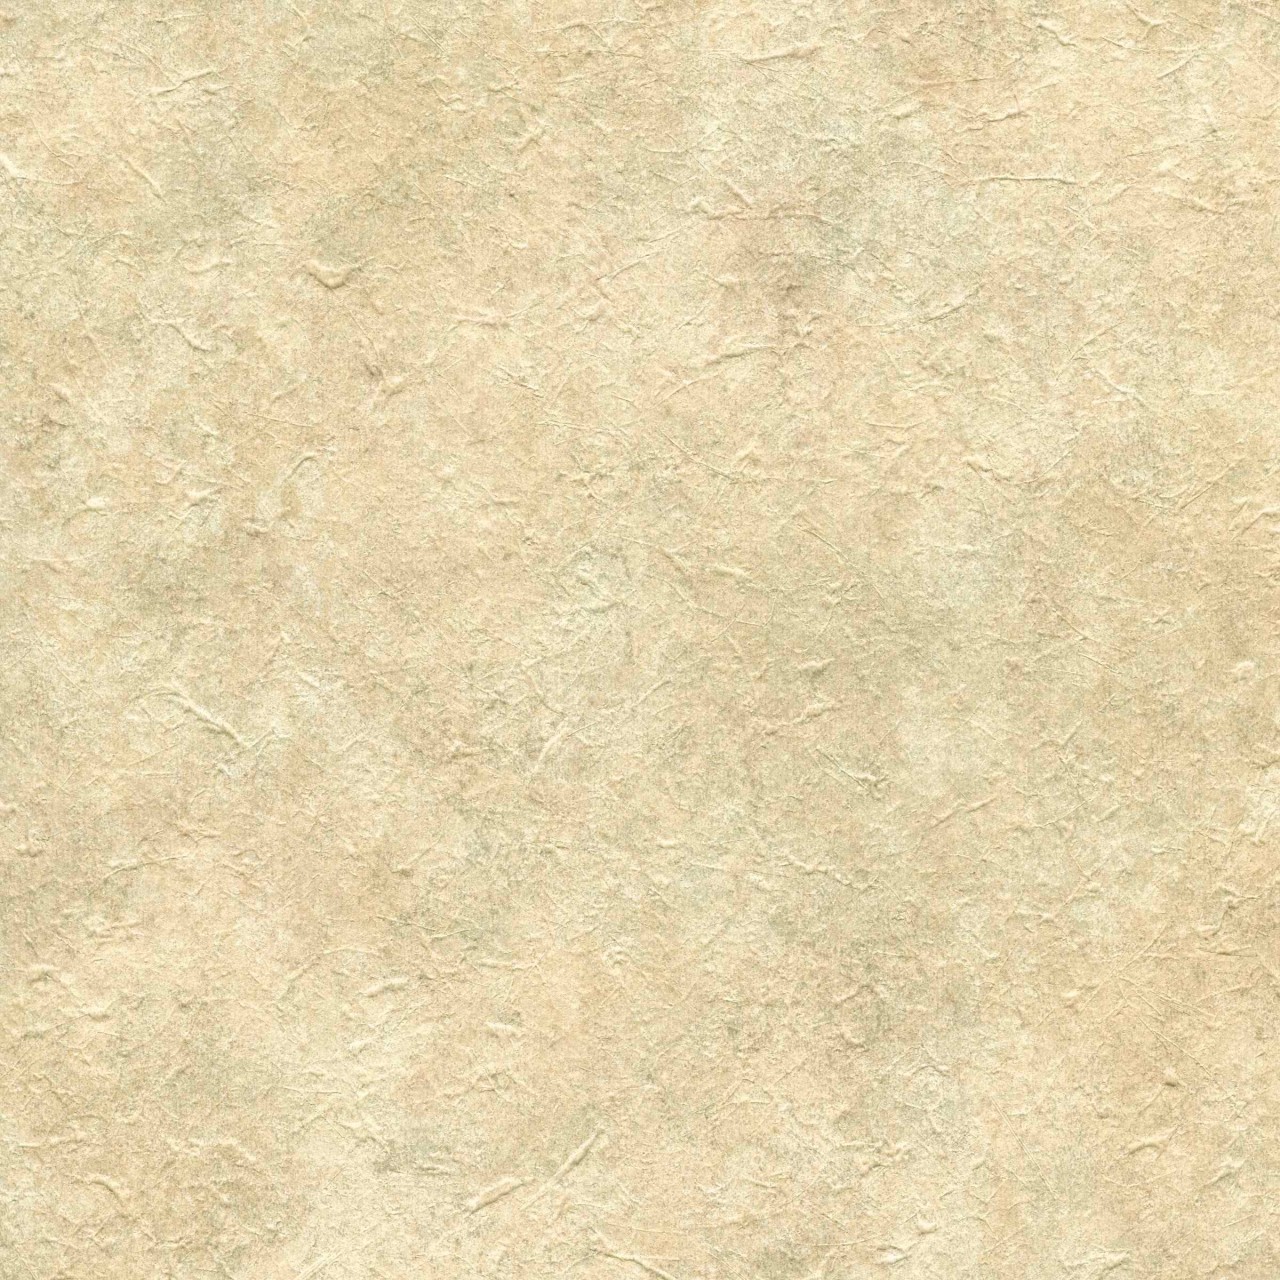 Tan 98W2210 Faux Stone Wallpaper   Textures Wallpaper